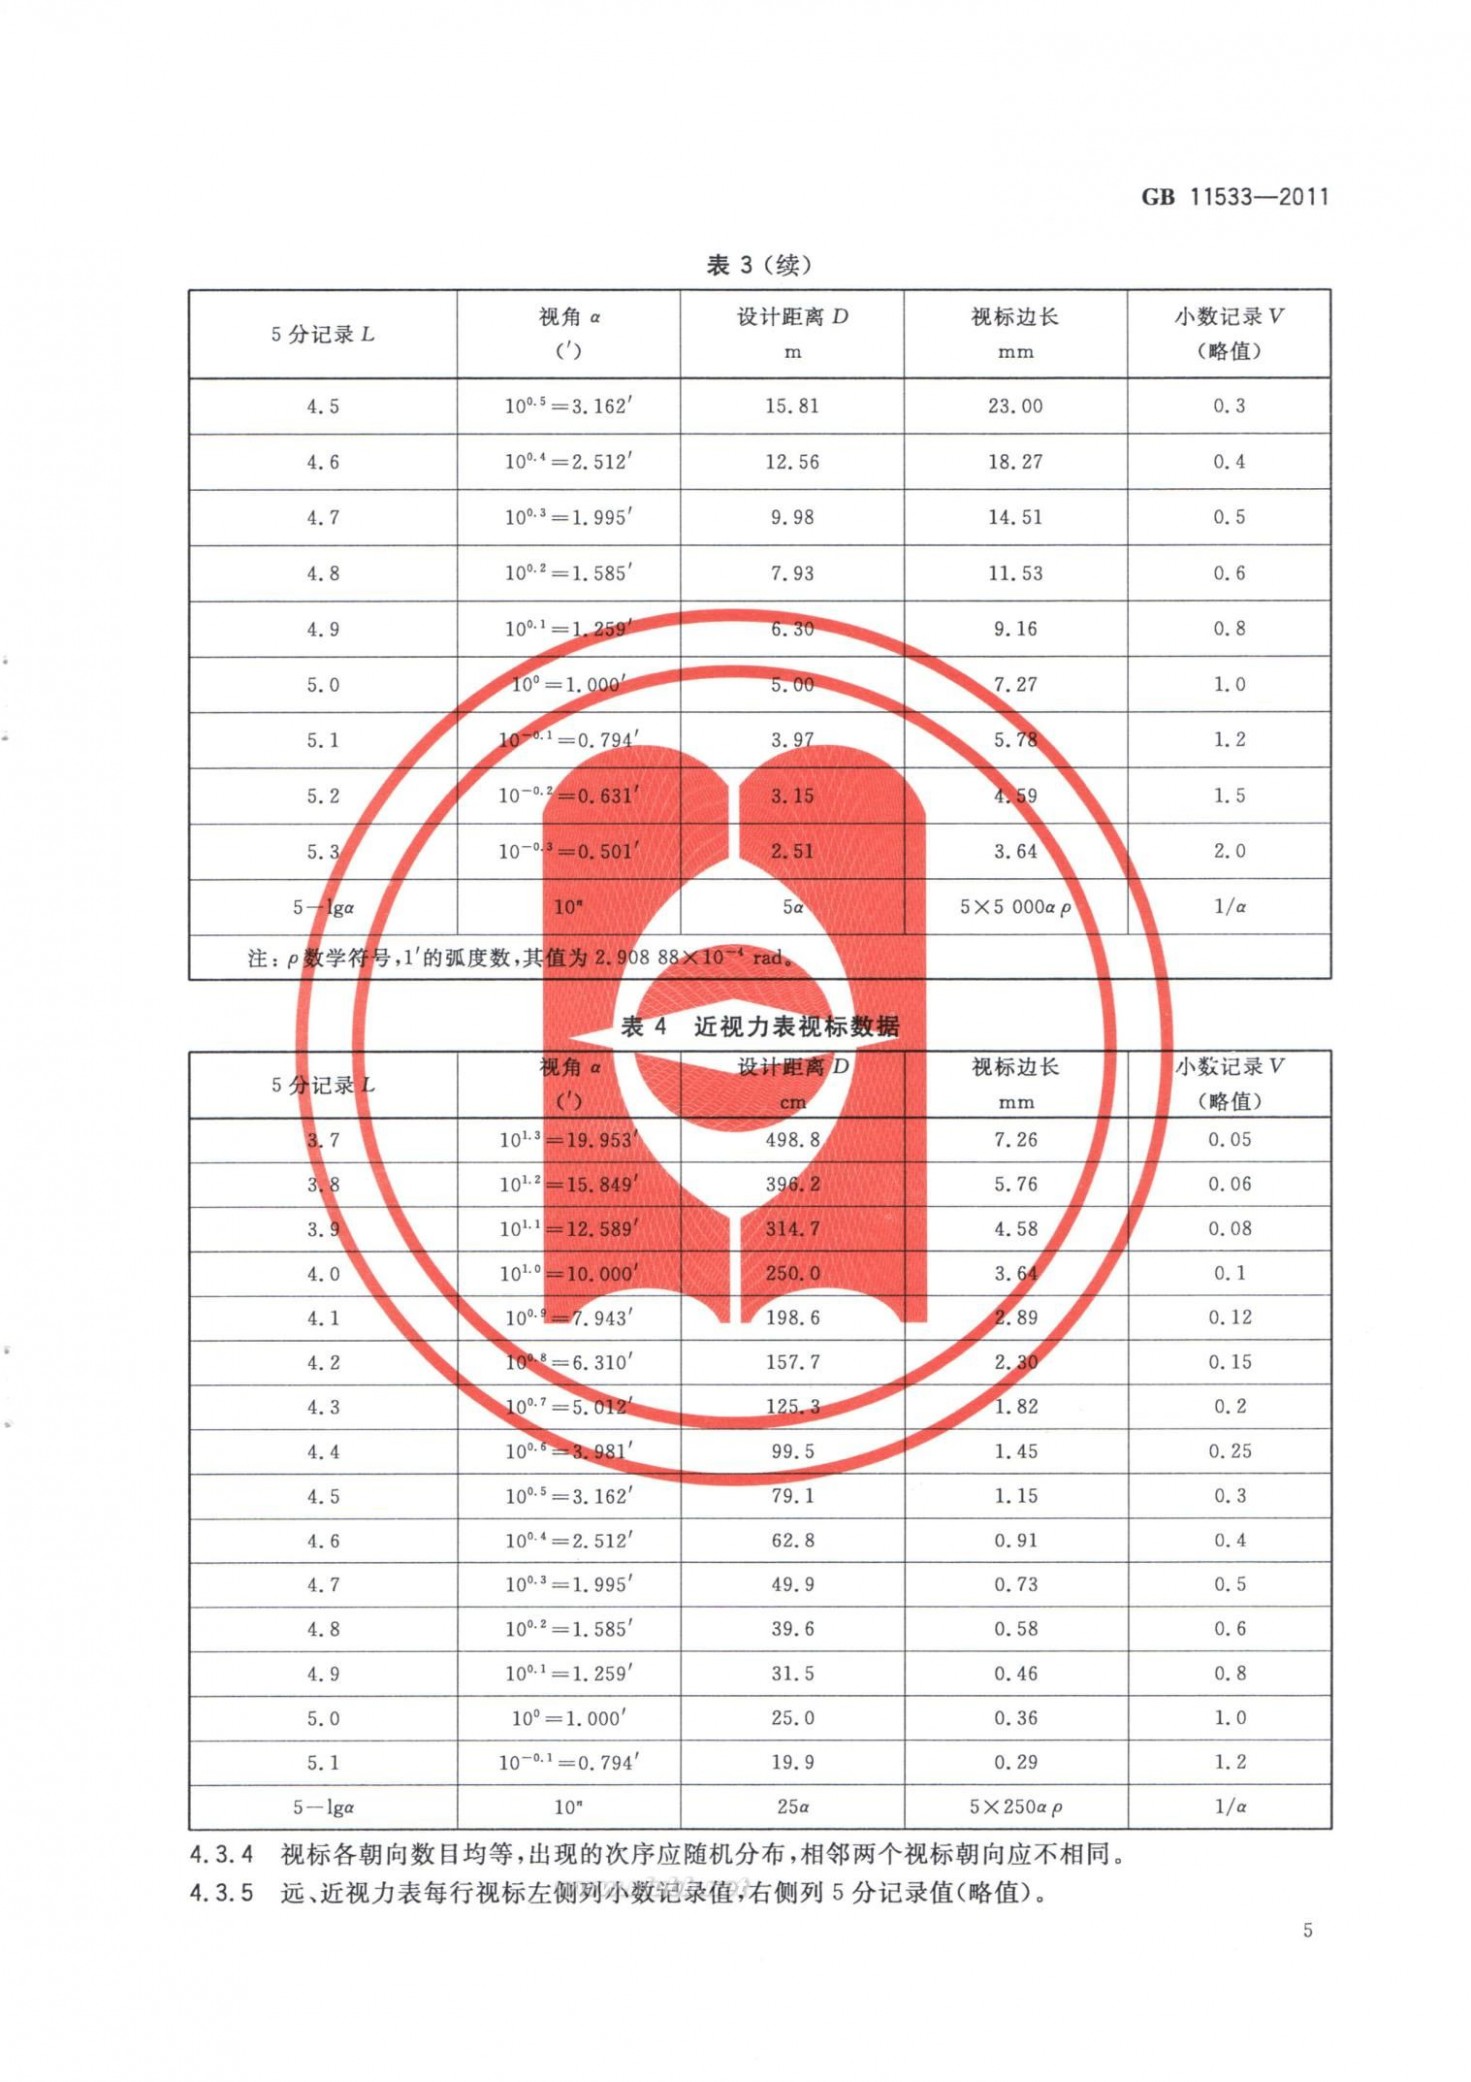 标准对数视力表 标准对数视力表(GB 11533-2011)